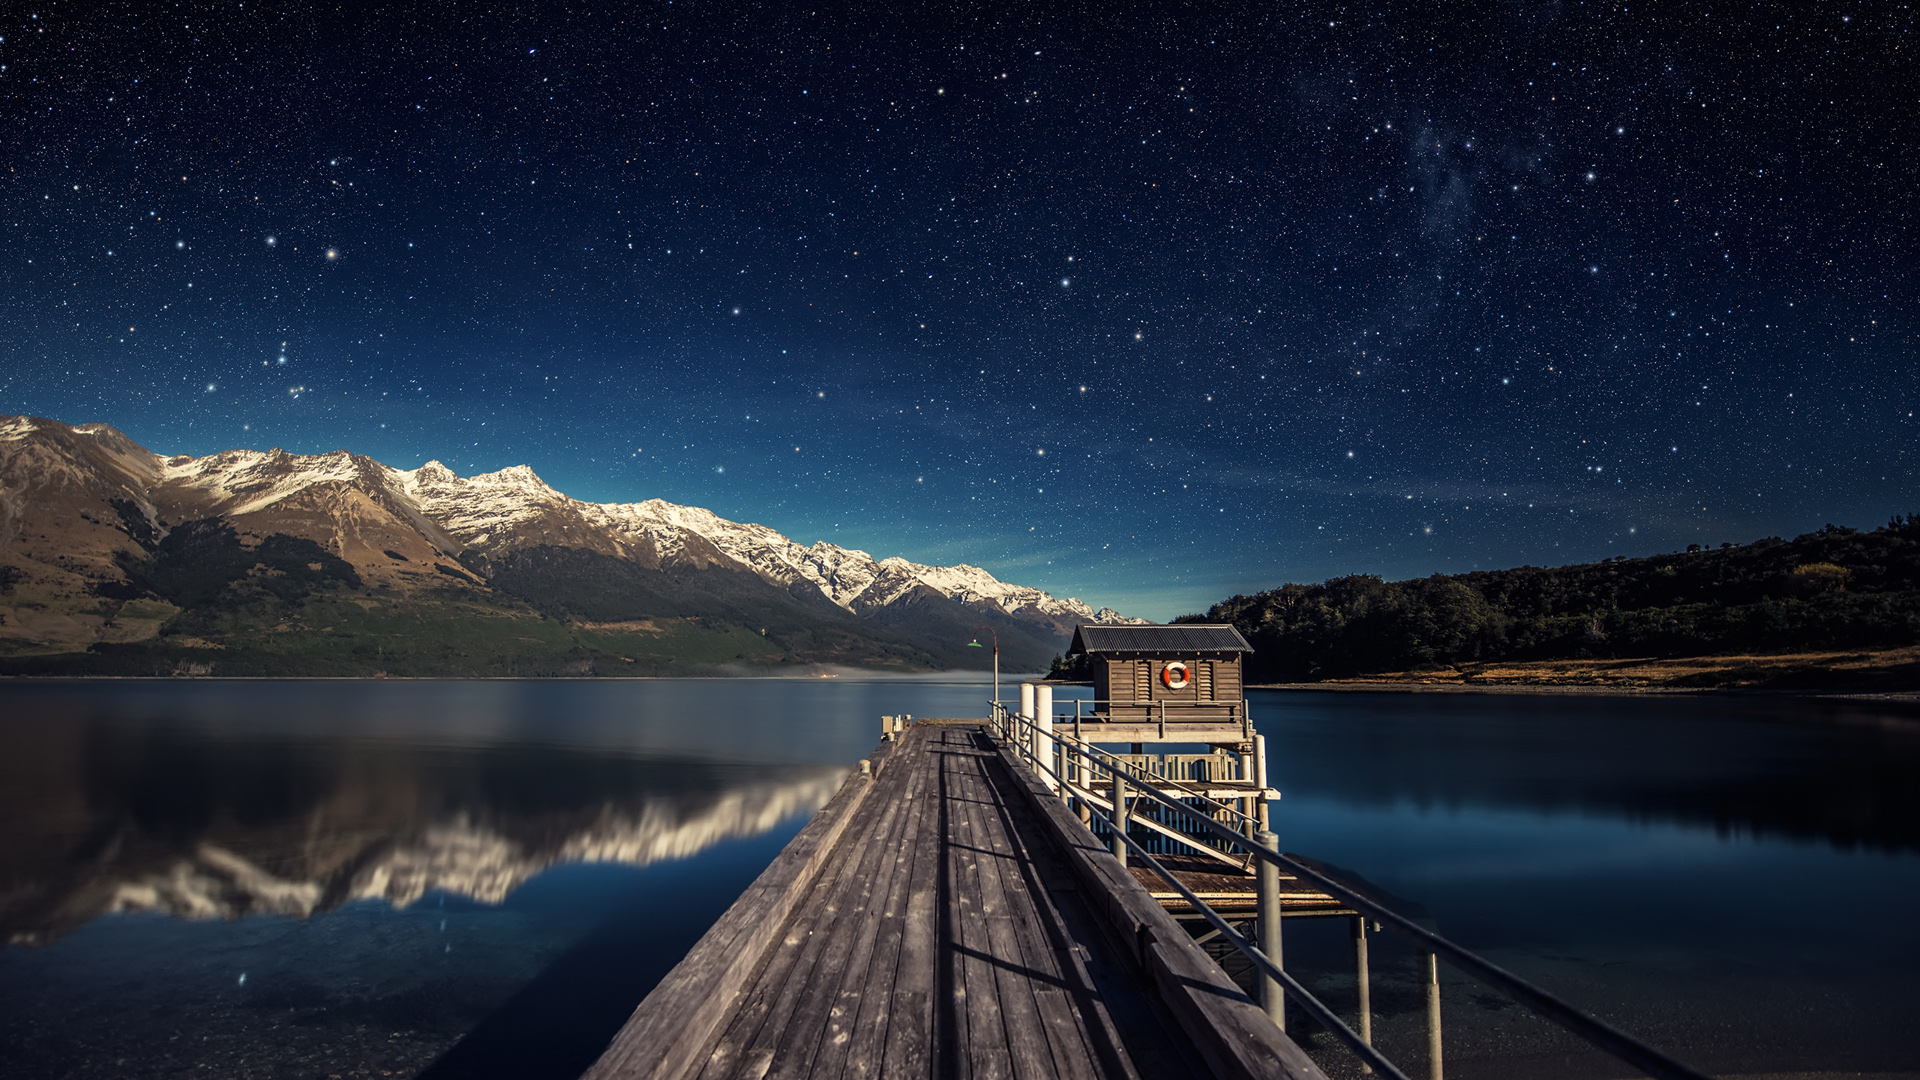 新西兰瓦卡蒂普湖星空风景桌面壁纸 风景壁纸 壁纸下载 彼岸桌面